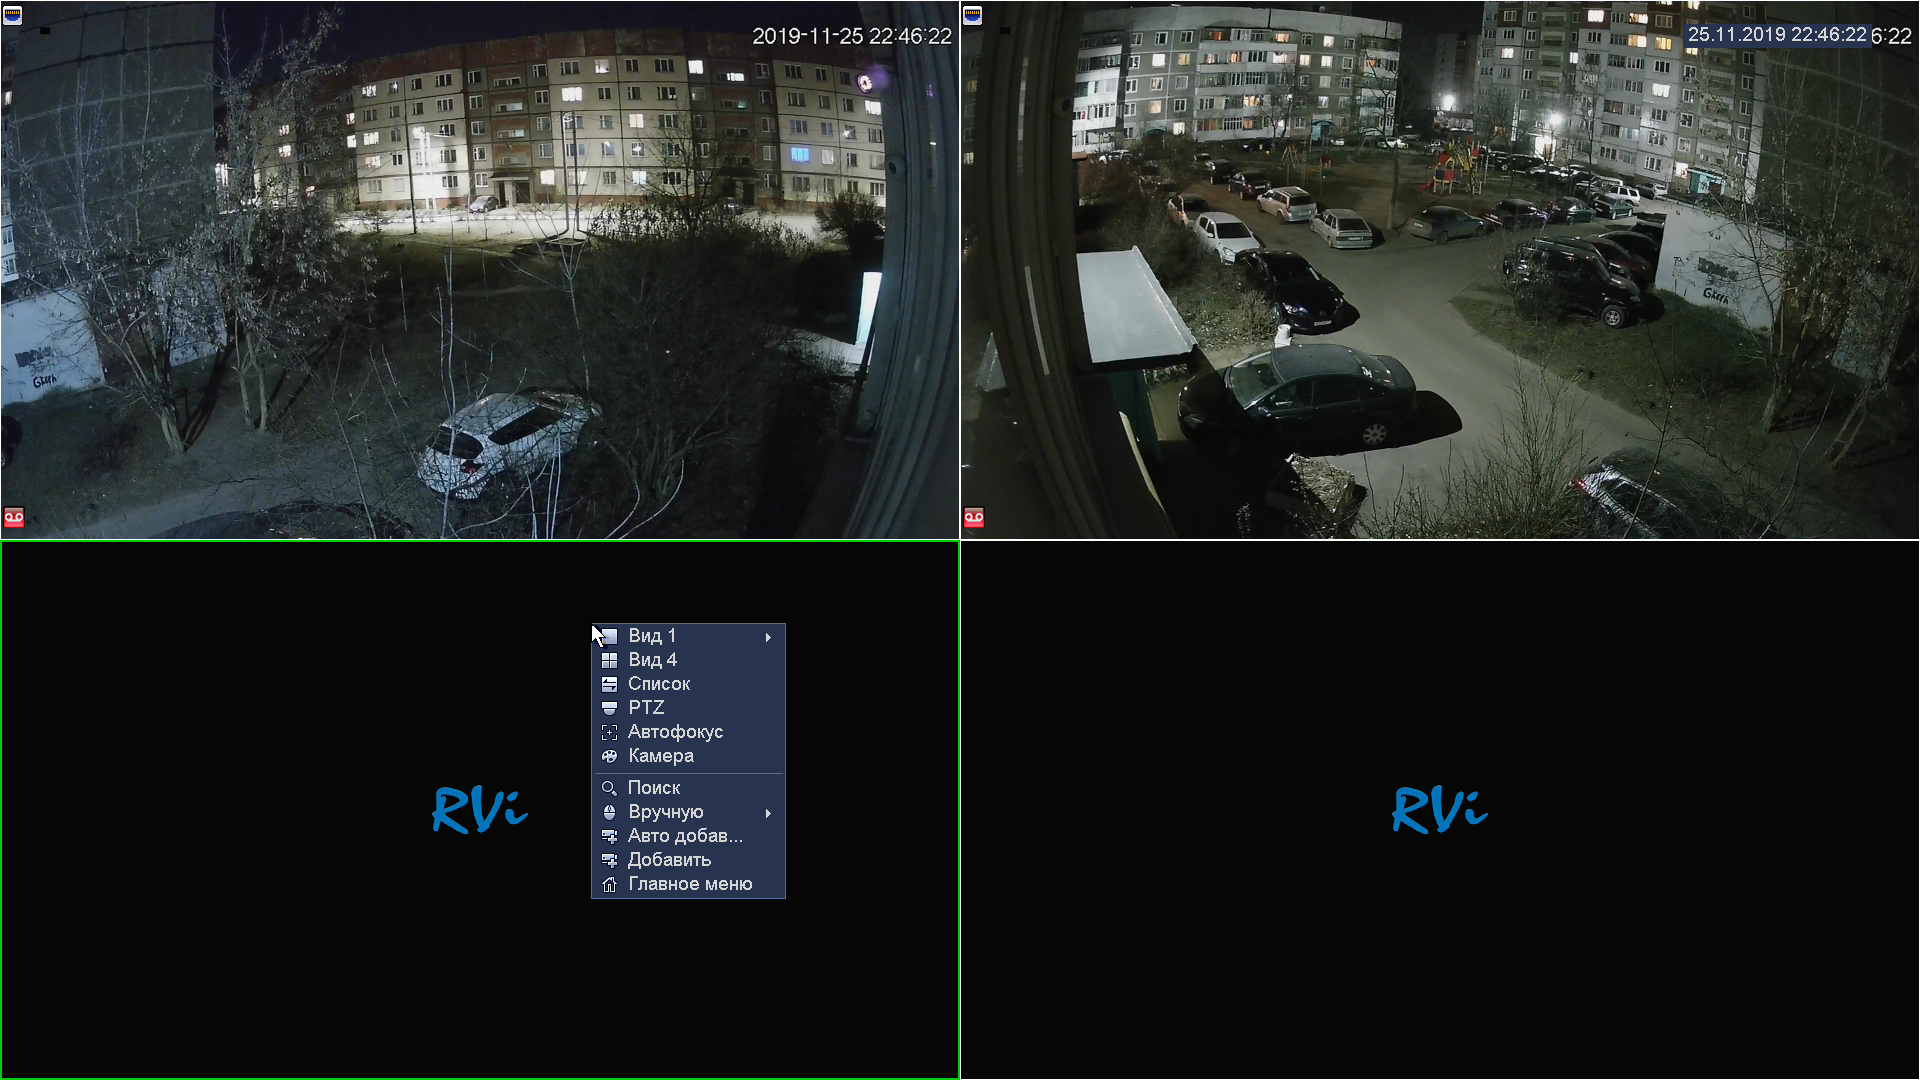 Камера видит экран. RVI IP видеонаблюдение. Интерфейс камеры RVI. Камера наблюдения монитор. Изображение с камеры видеонаблюдения.